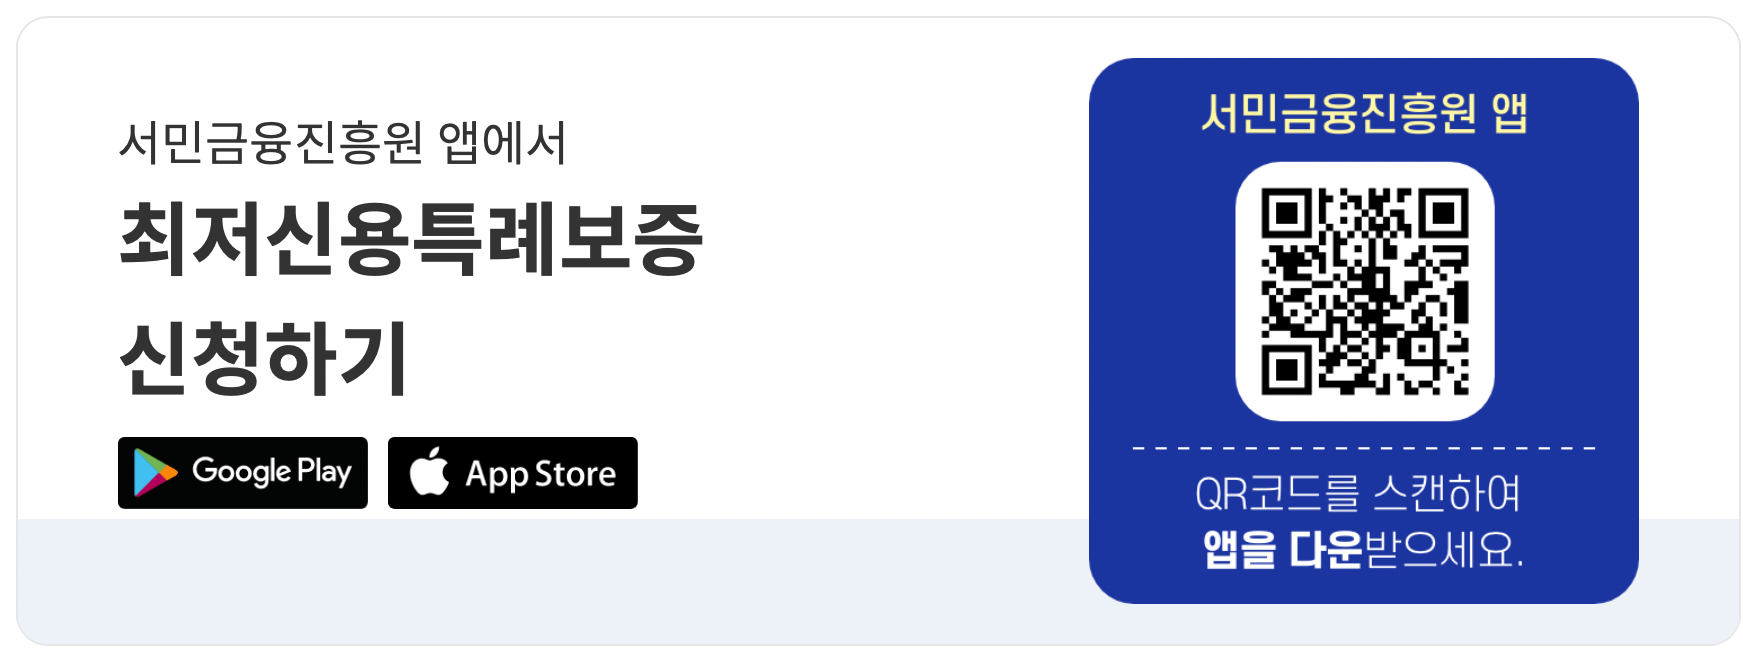 서민금융진흥원-홈페이지